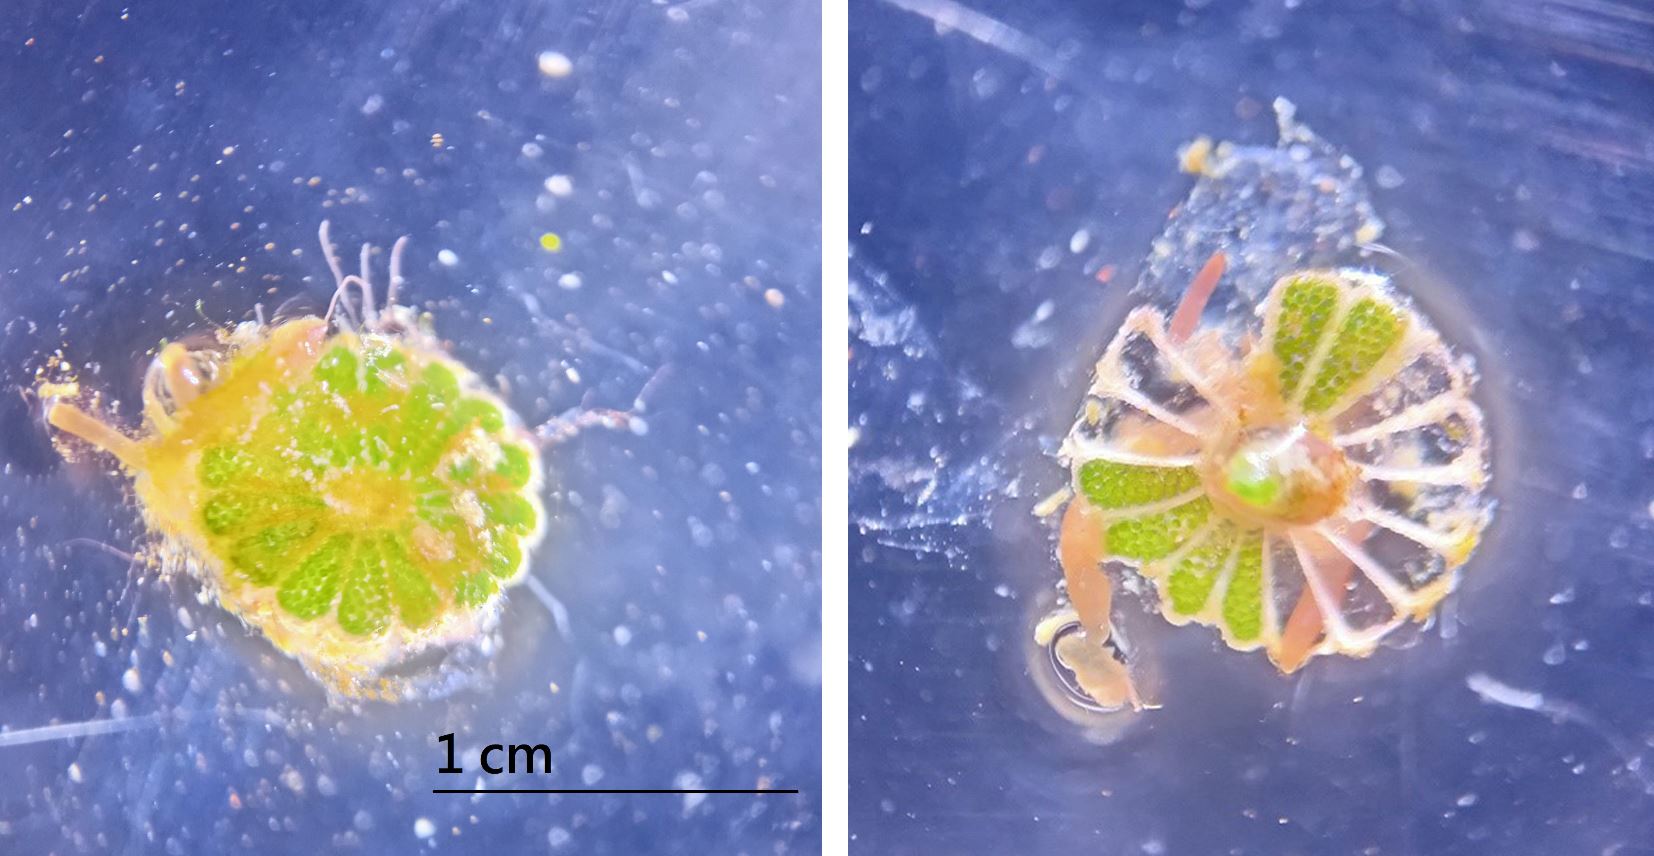 小傘藻傘蓋由16個輻射枝連接形成，傘蓋的每個腔室內有大量孢子（圖左），孢子具有不同步成熟與釋放的現象。圖右的10個腔室的孢子已經釋放完成